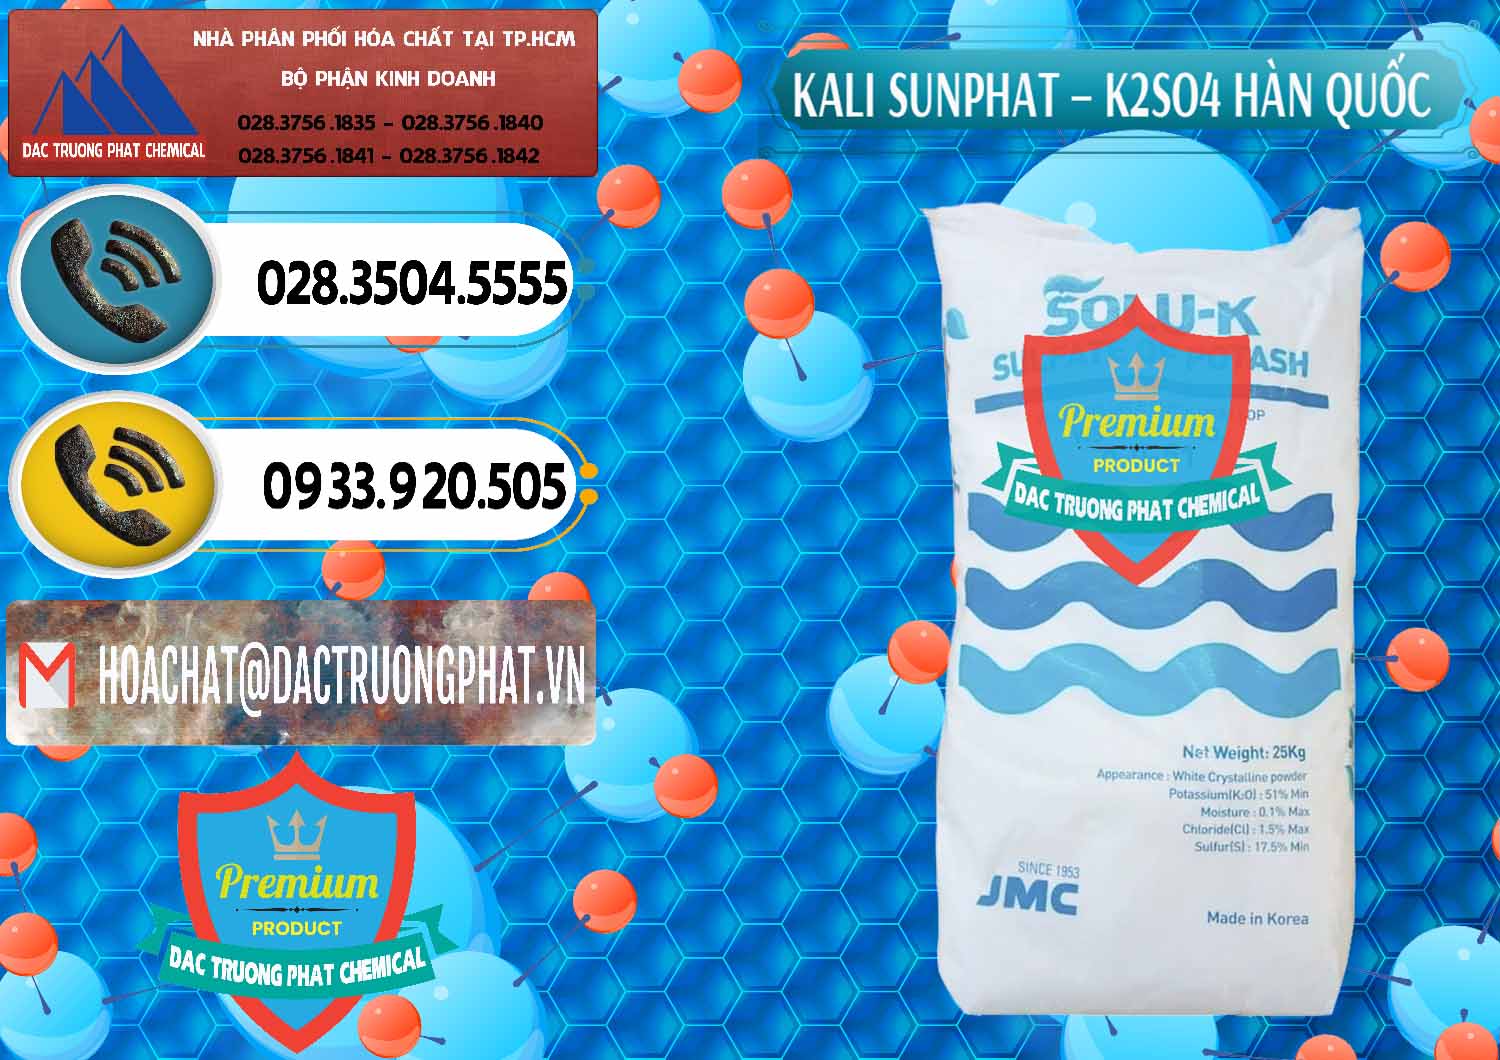 Chuyên cung cấp _ bán Kali Sunphat – K2SO4 Hàn Quốc Korea - 0410 - Cty phân phối _ cung cấp hóa chất tại TP.HCM - hoachatdetnhuom.vn